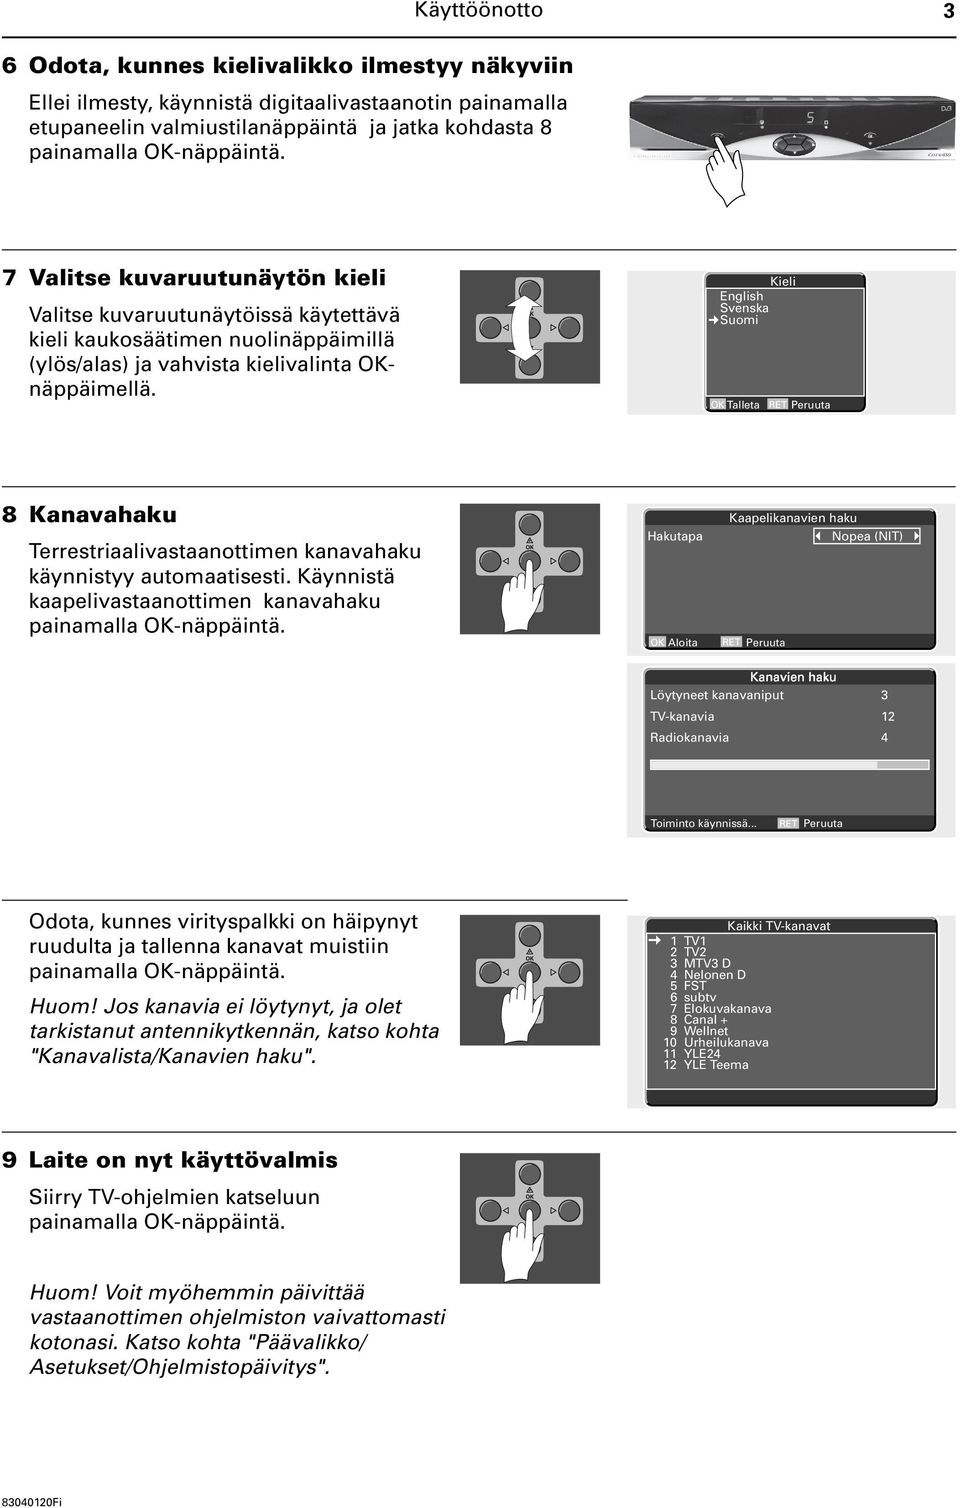 Kieli English Svenska Suomi OK Talleta 8 Kanavahaku Terrestriaalivastaanottimen kanavahaku käynnistyy automaatisesti. Käynnistä kaapelivastaanottimen kanavahaku painamalla OK-näppäintä.